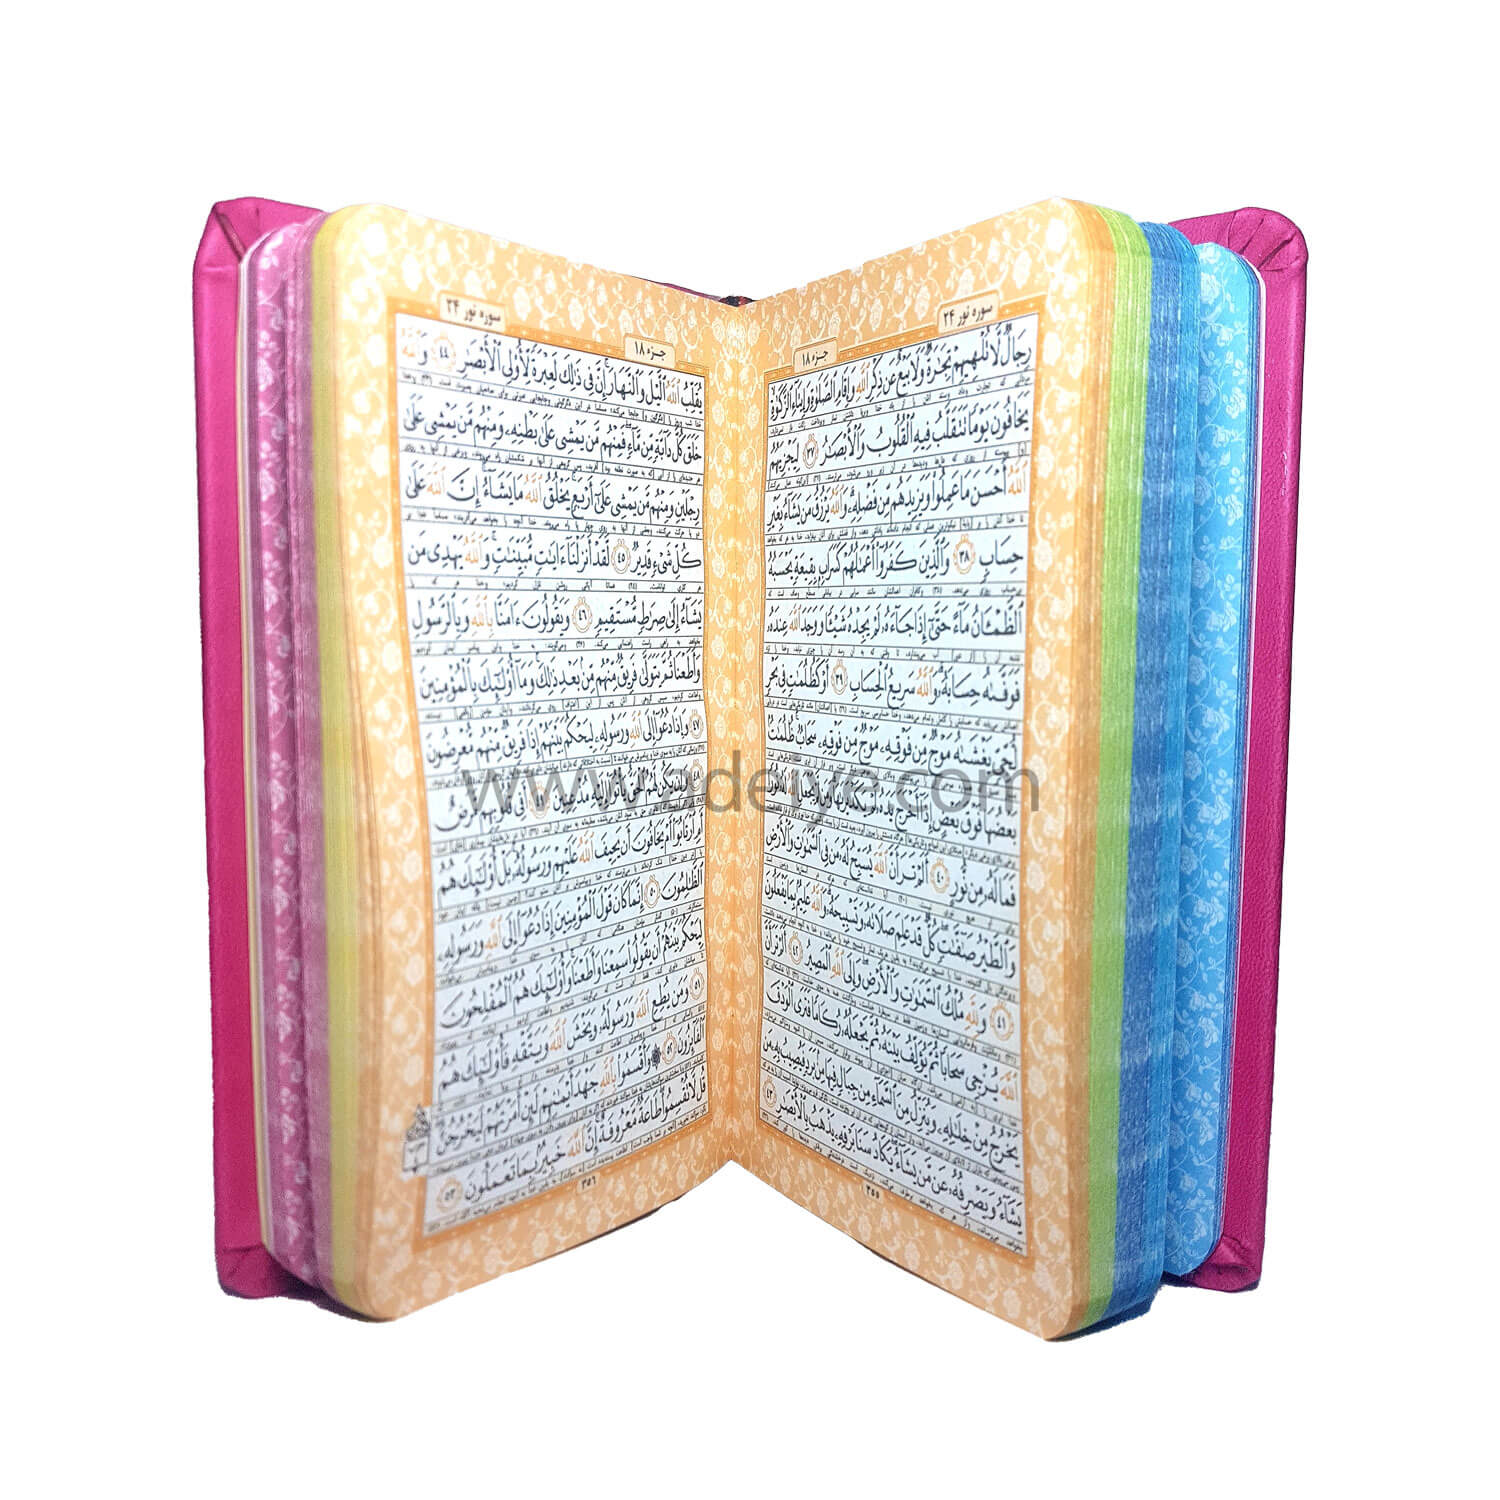 تصویر  کتاب قرآن پالتویی نسیم جلد ترمو با برگه های رنگی